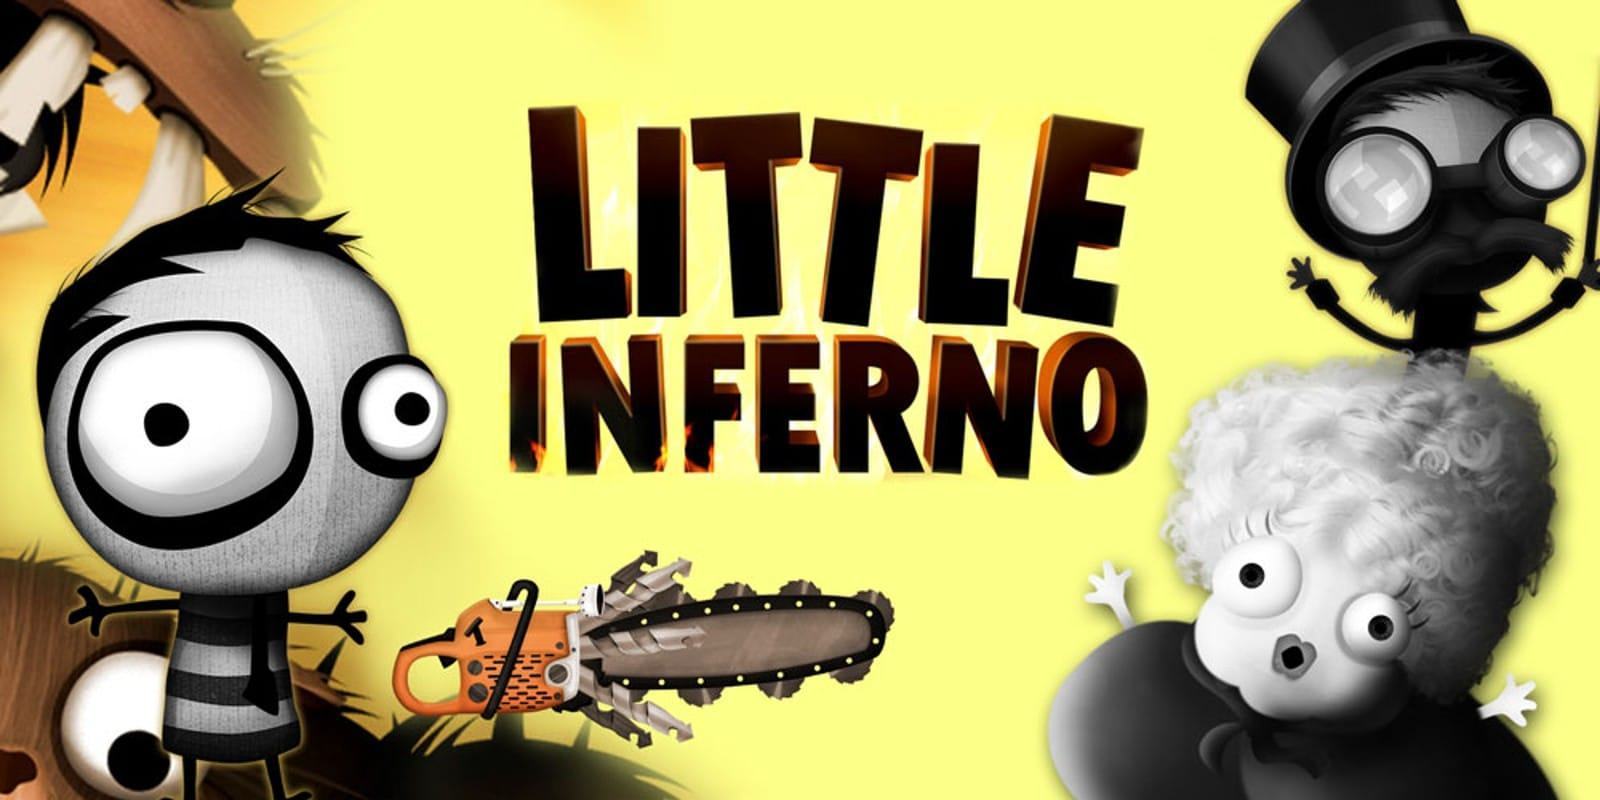 Little Inferno è il nuovo gioco gratis sul Epic Games Store 6